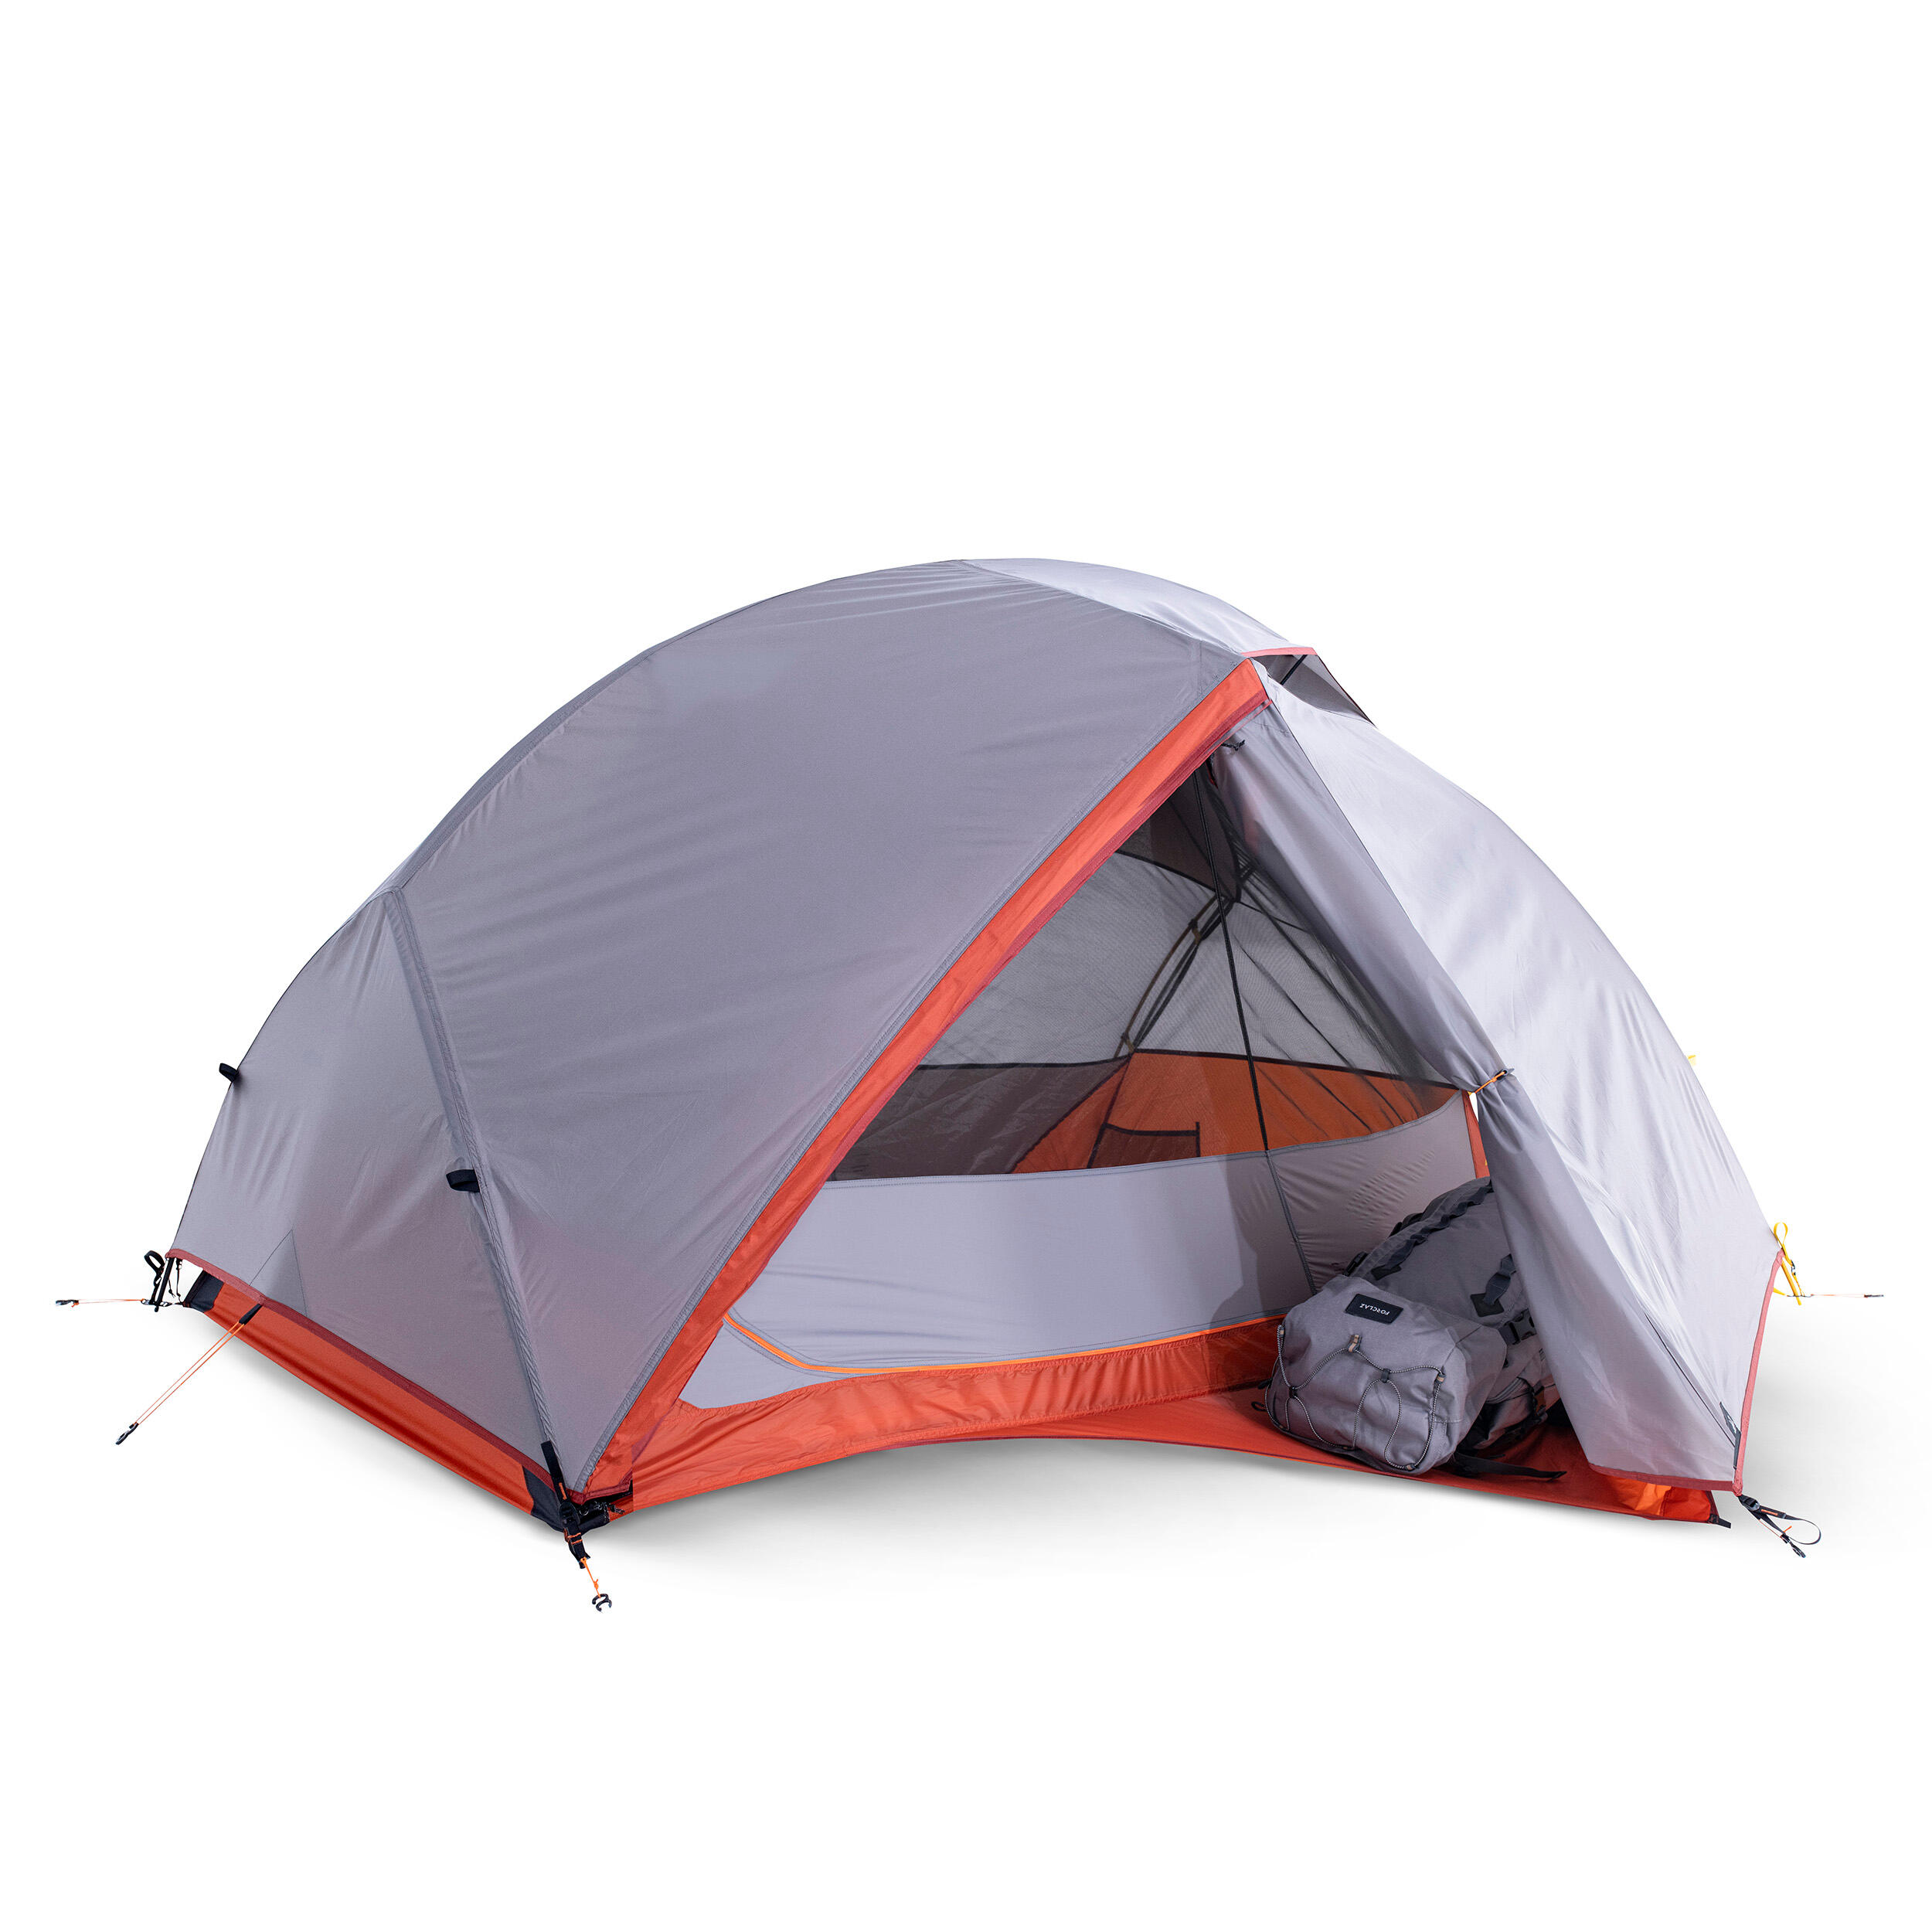 Trekking dome tent - 2-p - MT900 7/14